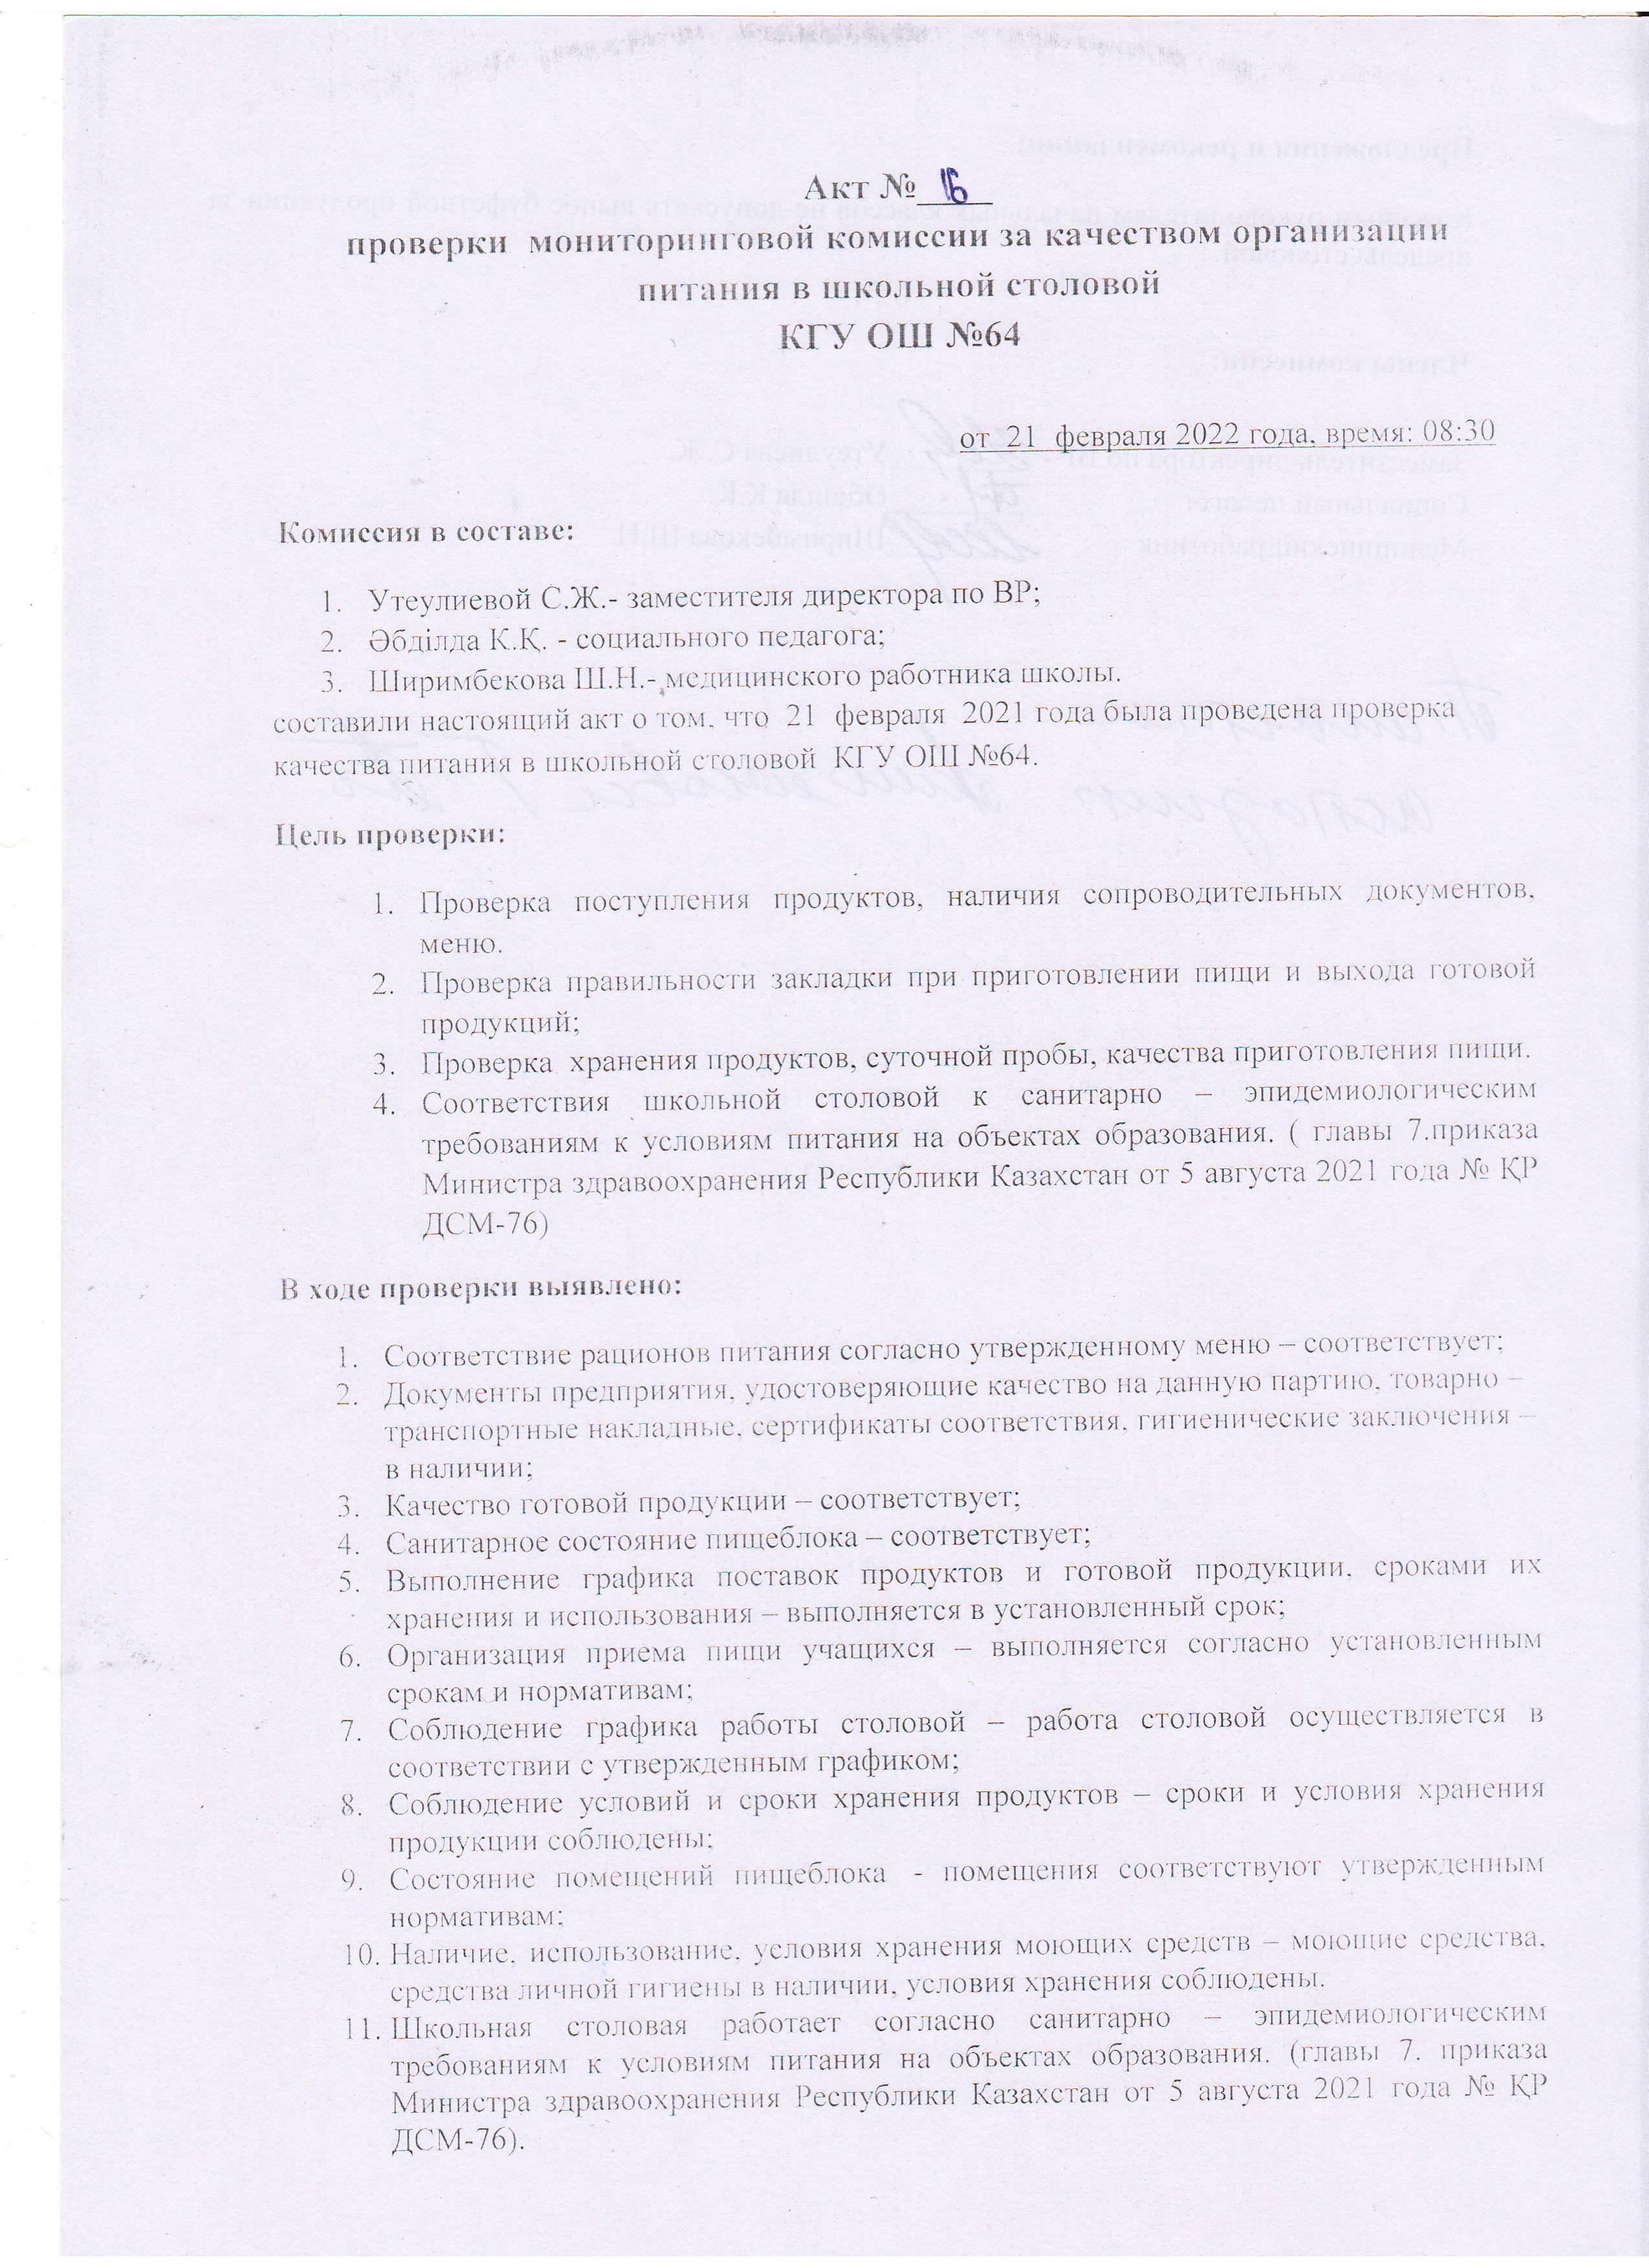 АКТ №16 проверки школьной столовой комиссии по мониторингу (бракеражной)